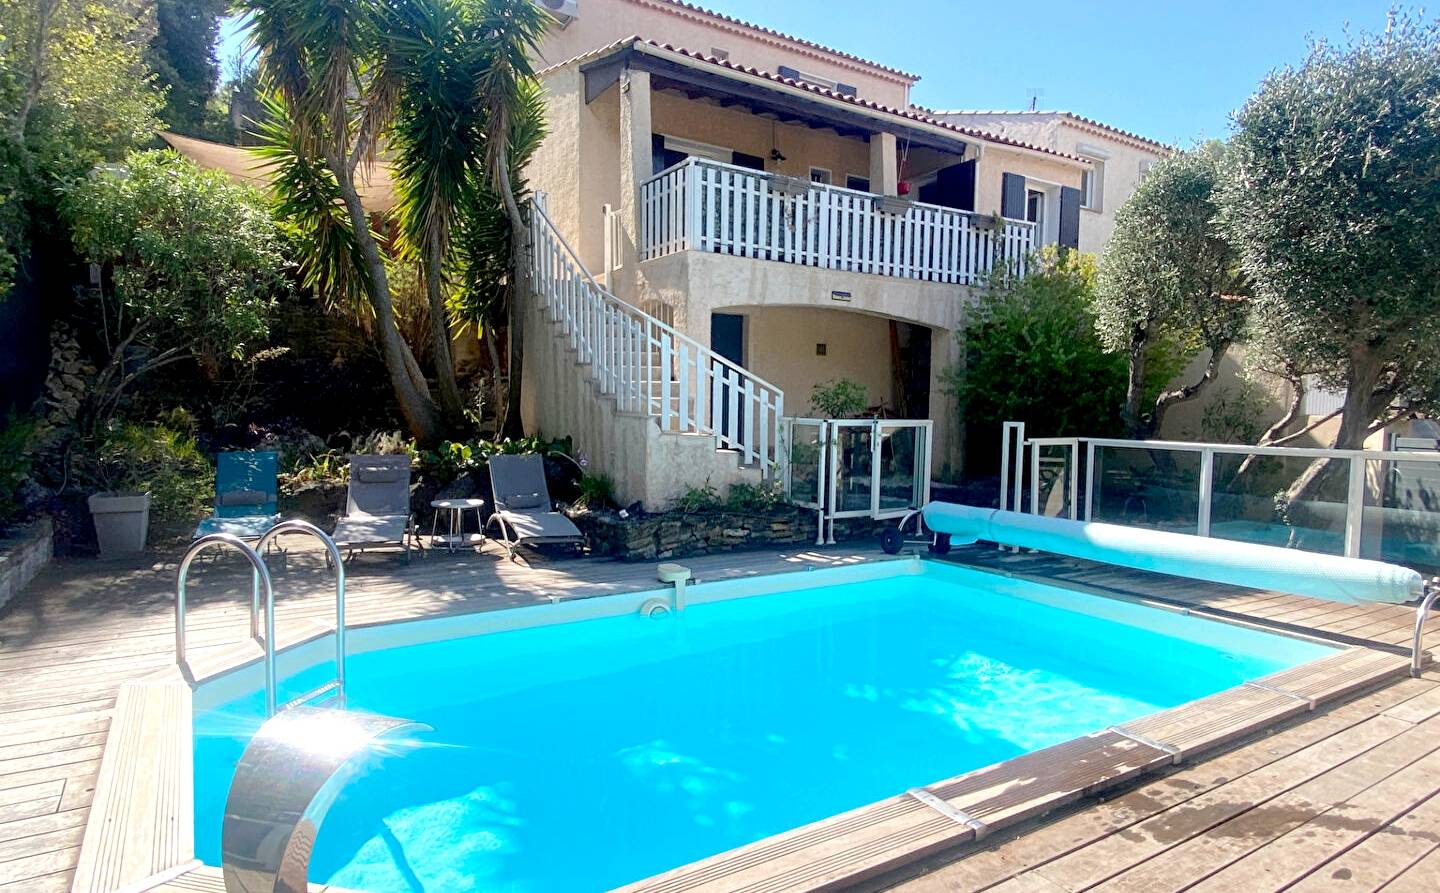 Maison 5 pièces avec piscine à vendre quartier de la Barre à Toulon